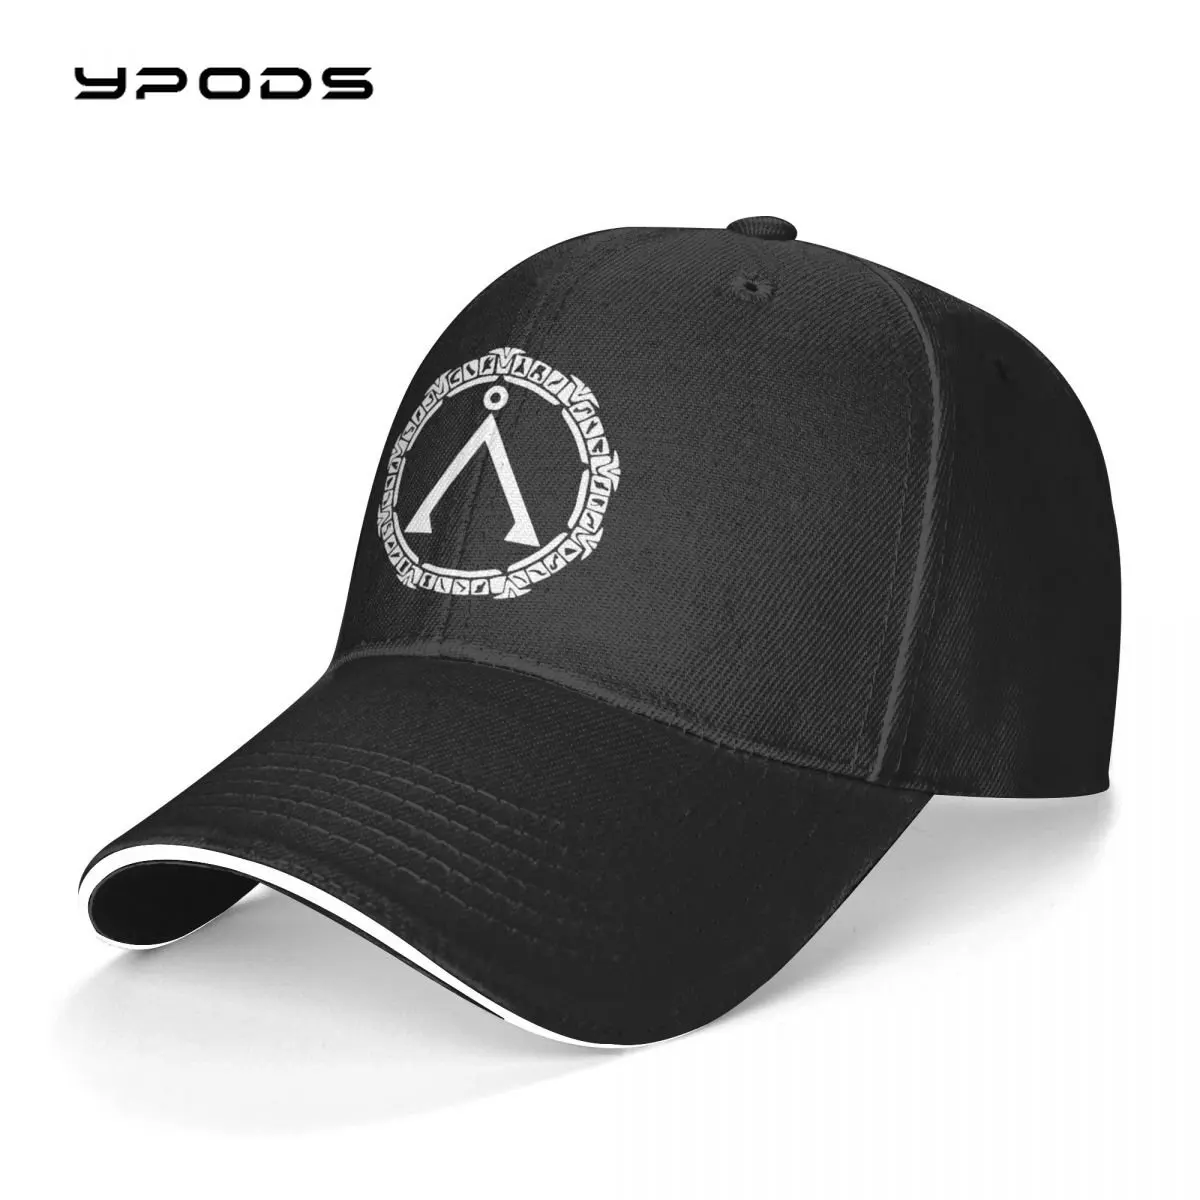 

Stargate Sg1 Trucker Cap Snapback Hat for Men Baseball Mens Hats Caps for Logo